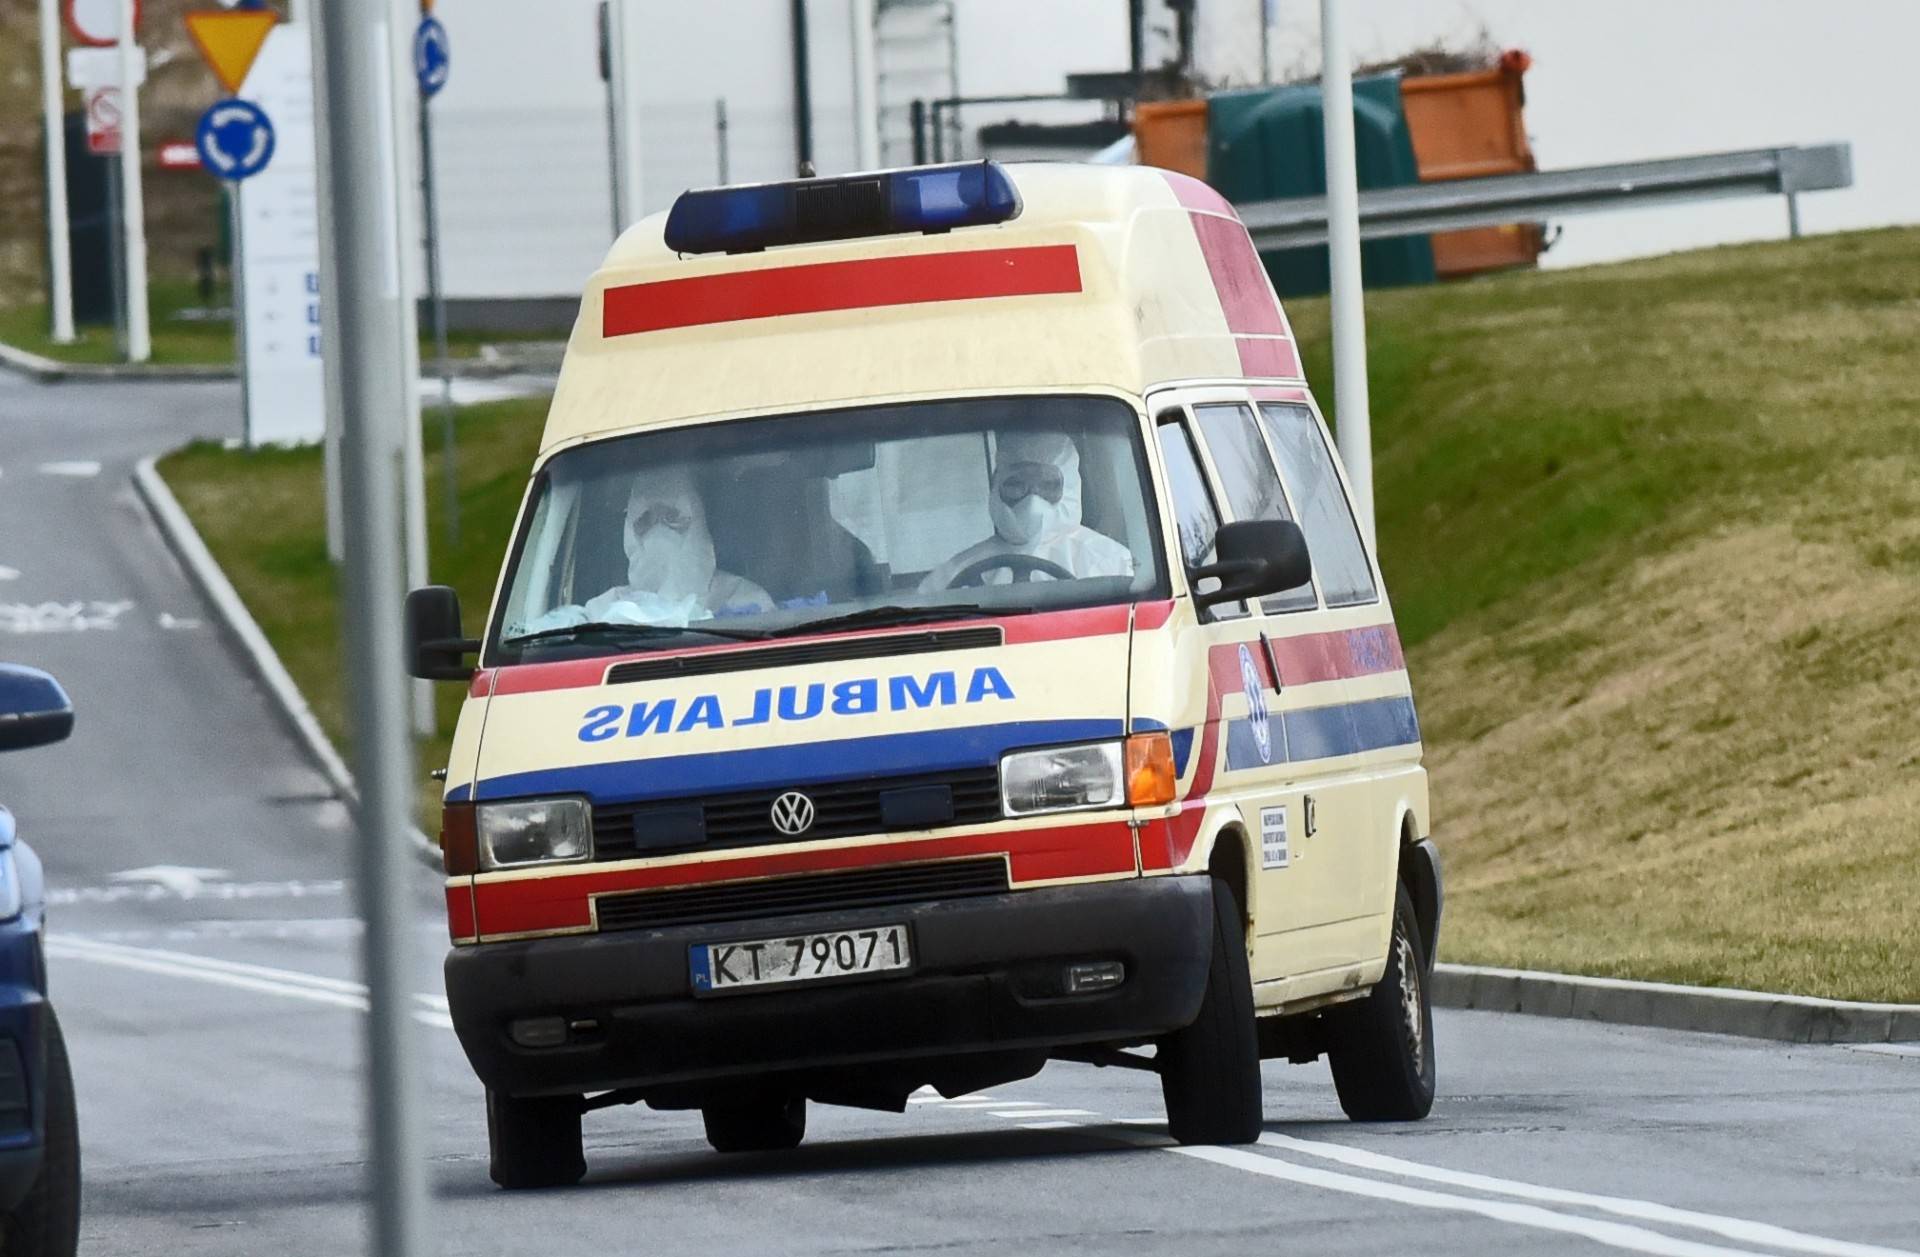 Druga ofiara śmiertelna w Krakowie, 14 ofiar w ciągu dnia w kraju